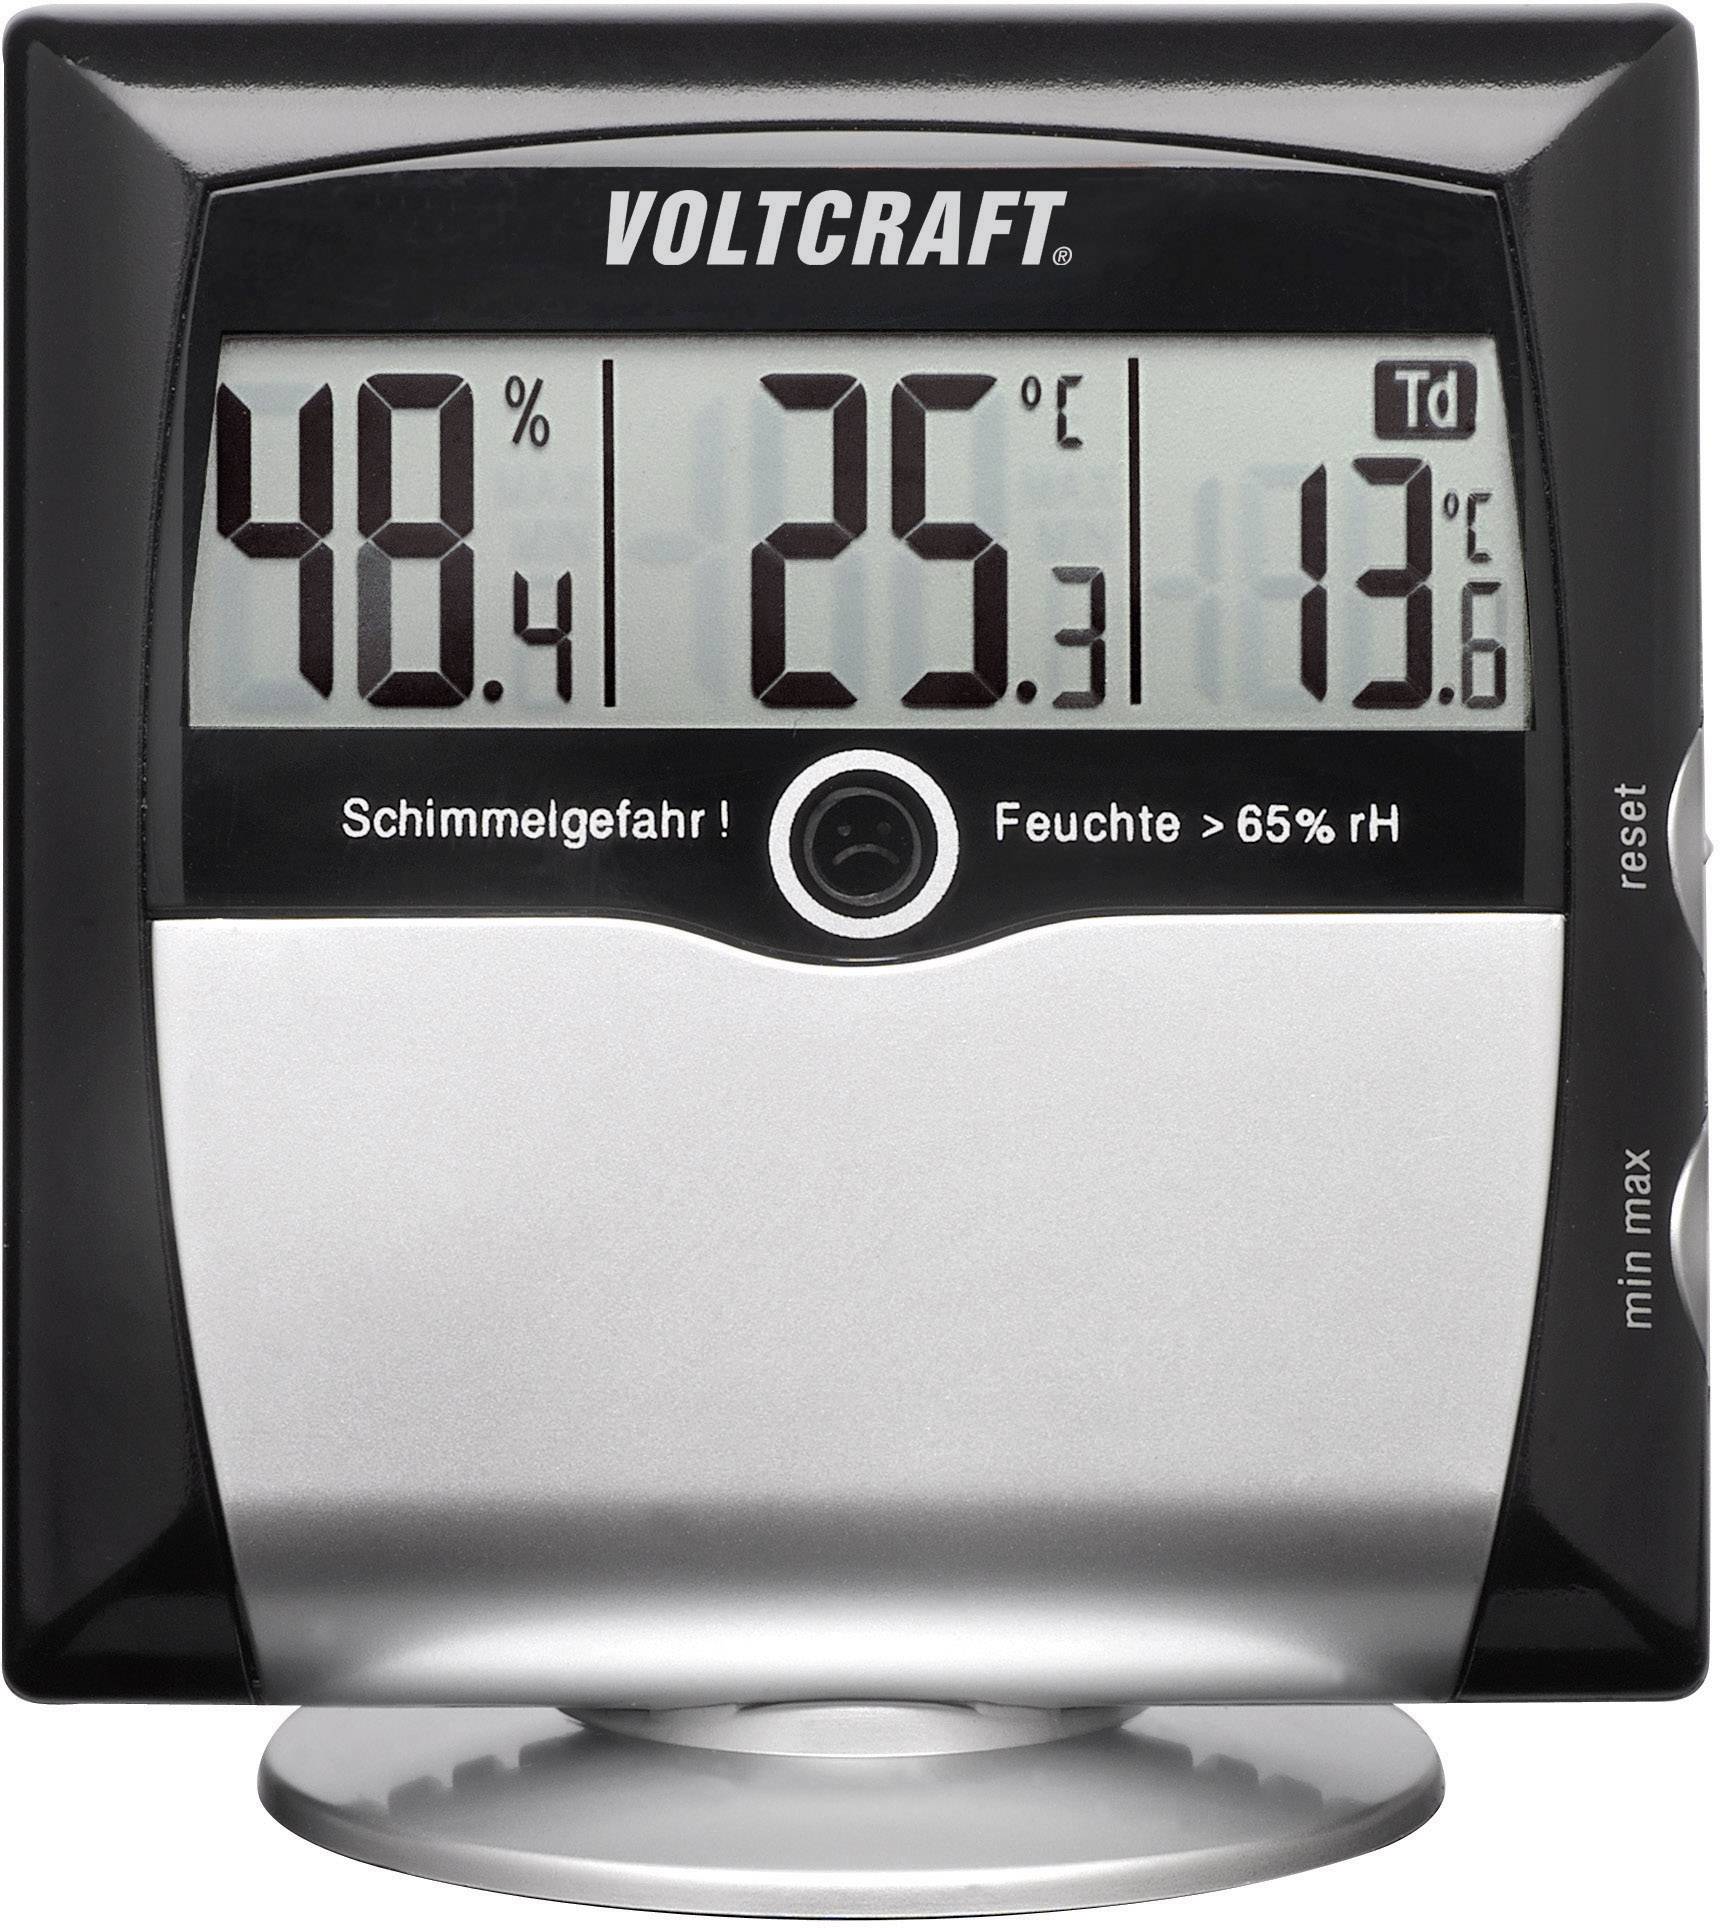 VOLTCRAFT Luftfeuchtemessgerät (Hygrometer) VOLTCRAFT MS-10 1 % rF 99 % rF Taupunkt-/Schimmelwarnanz